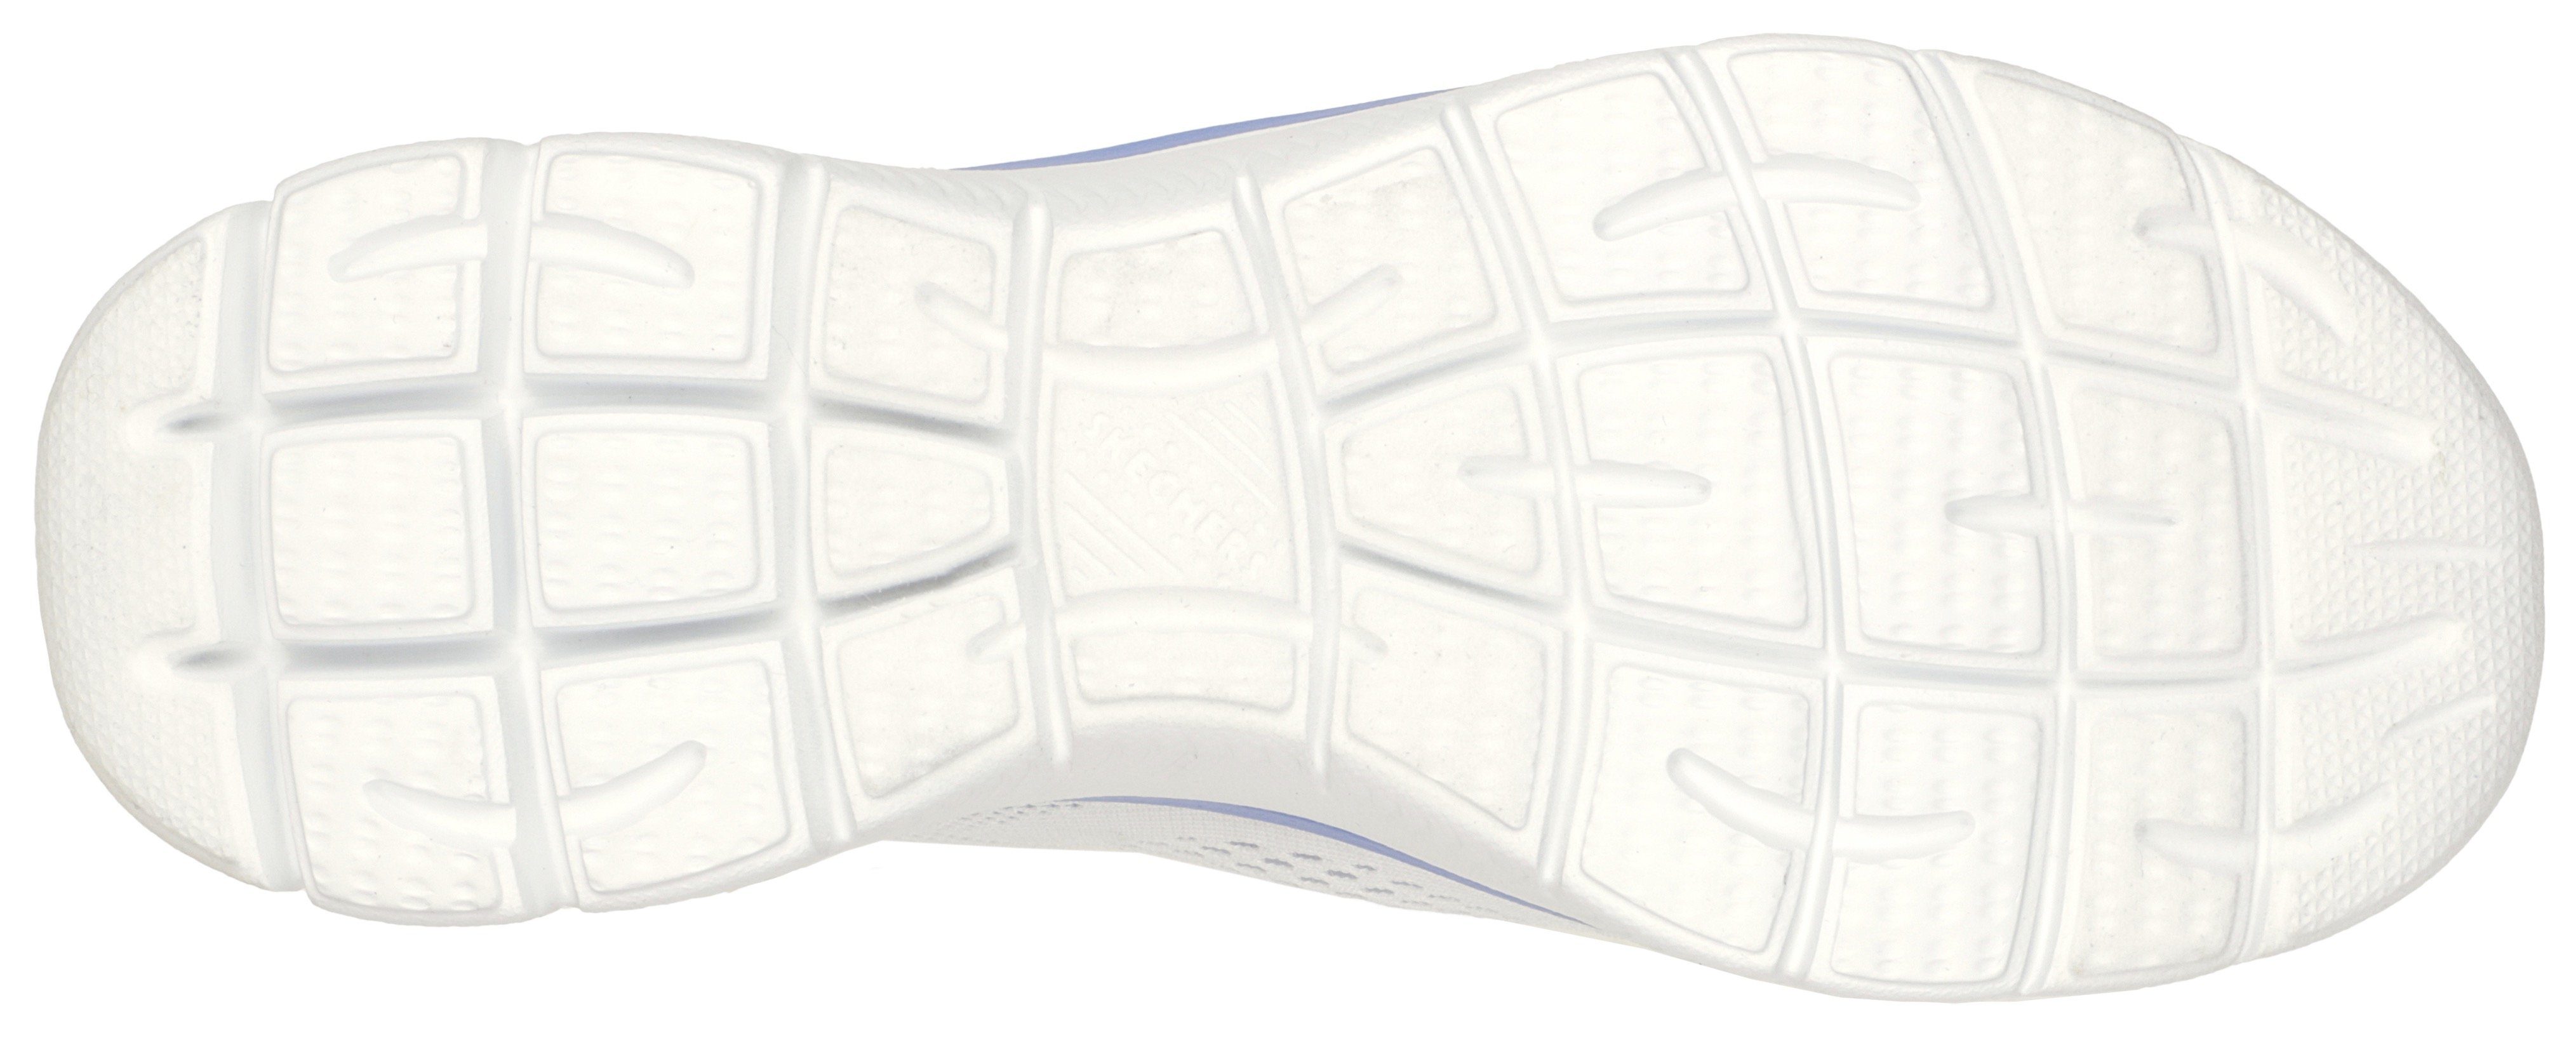 Skechers SUMMITS PERFECT VIEWS Sneaker weiß-kombiniert Maschinenwäsche Slip-On für geeignet